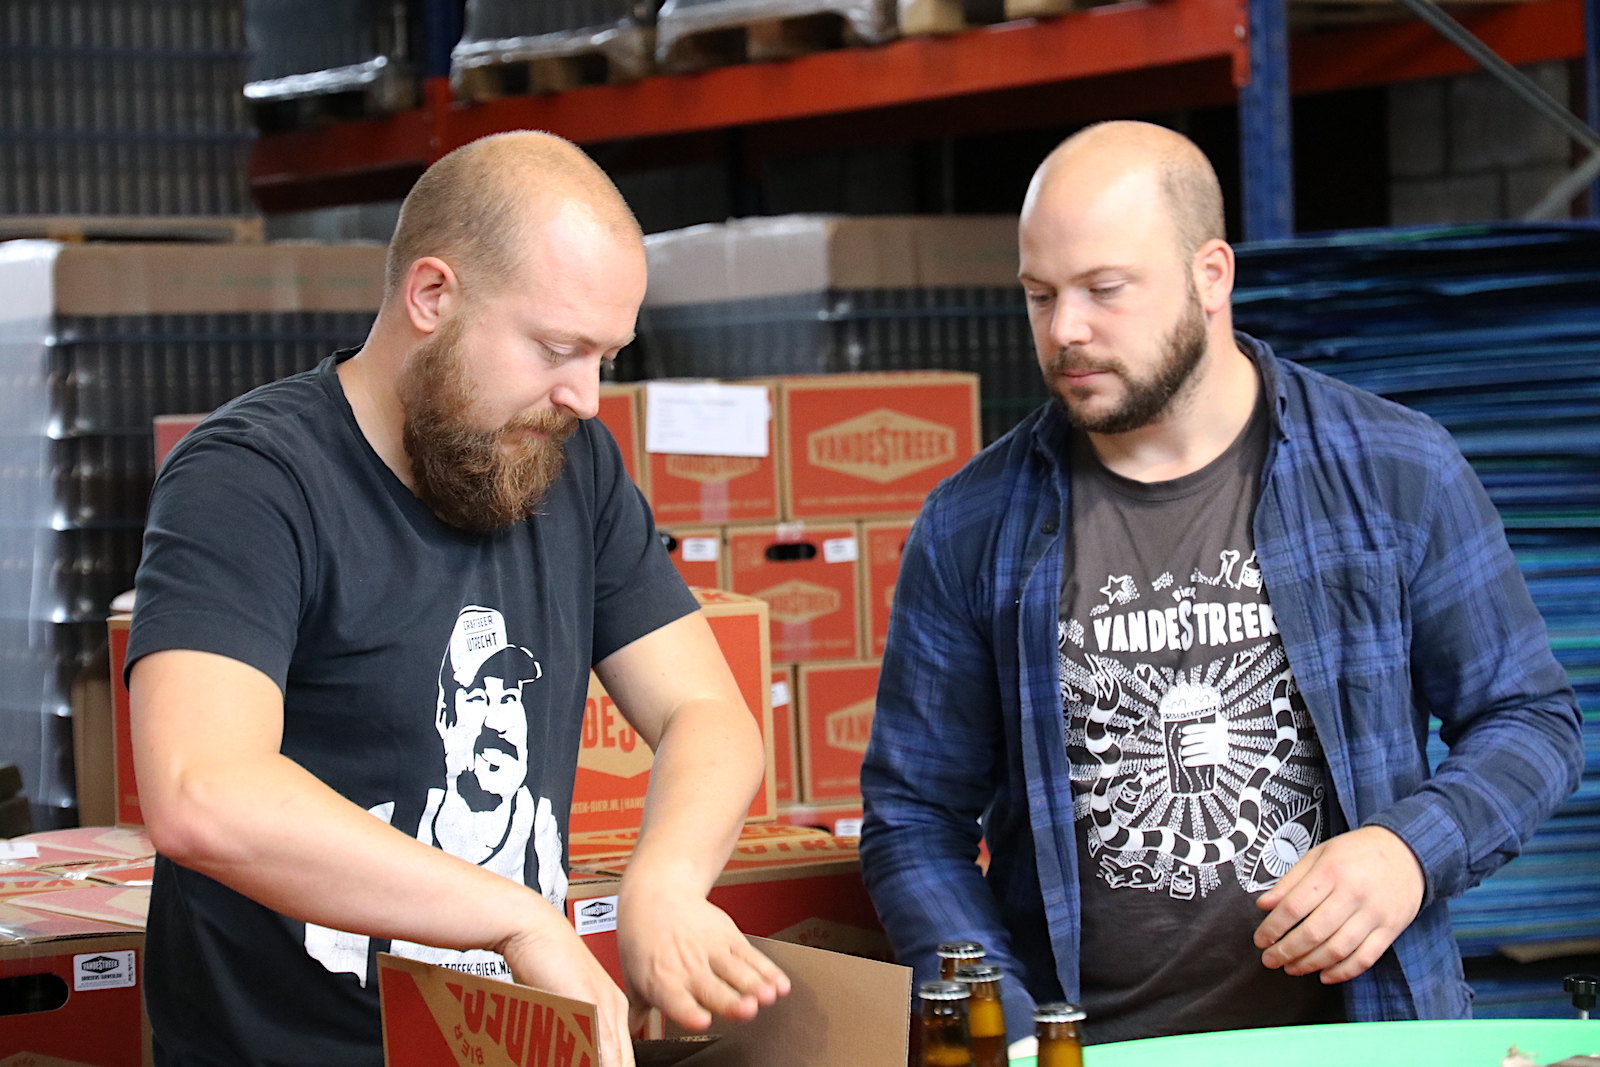 Ronald and Sander van de Streek, founders of VandeStreek beer